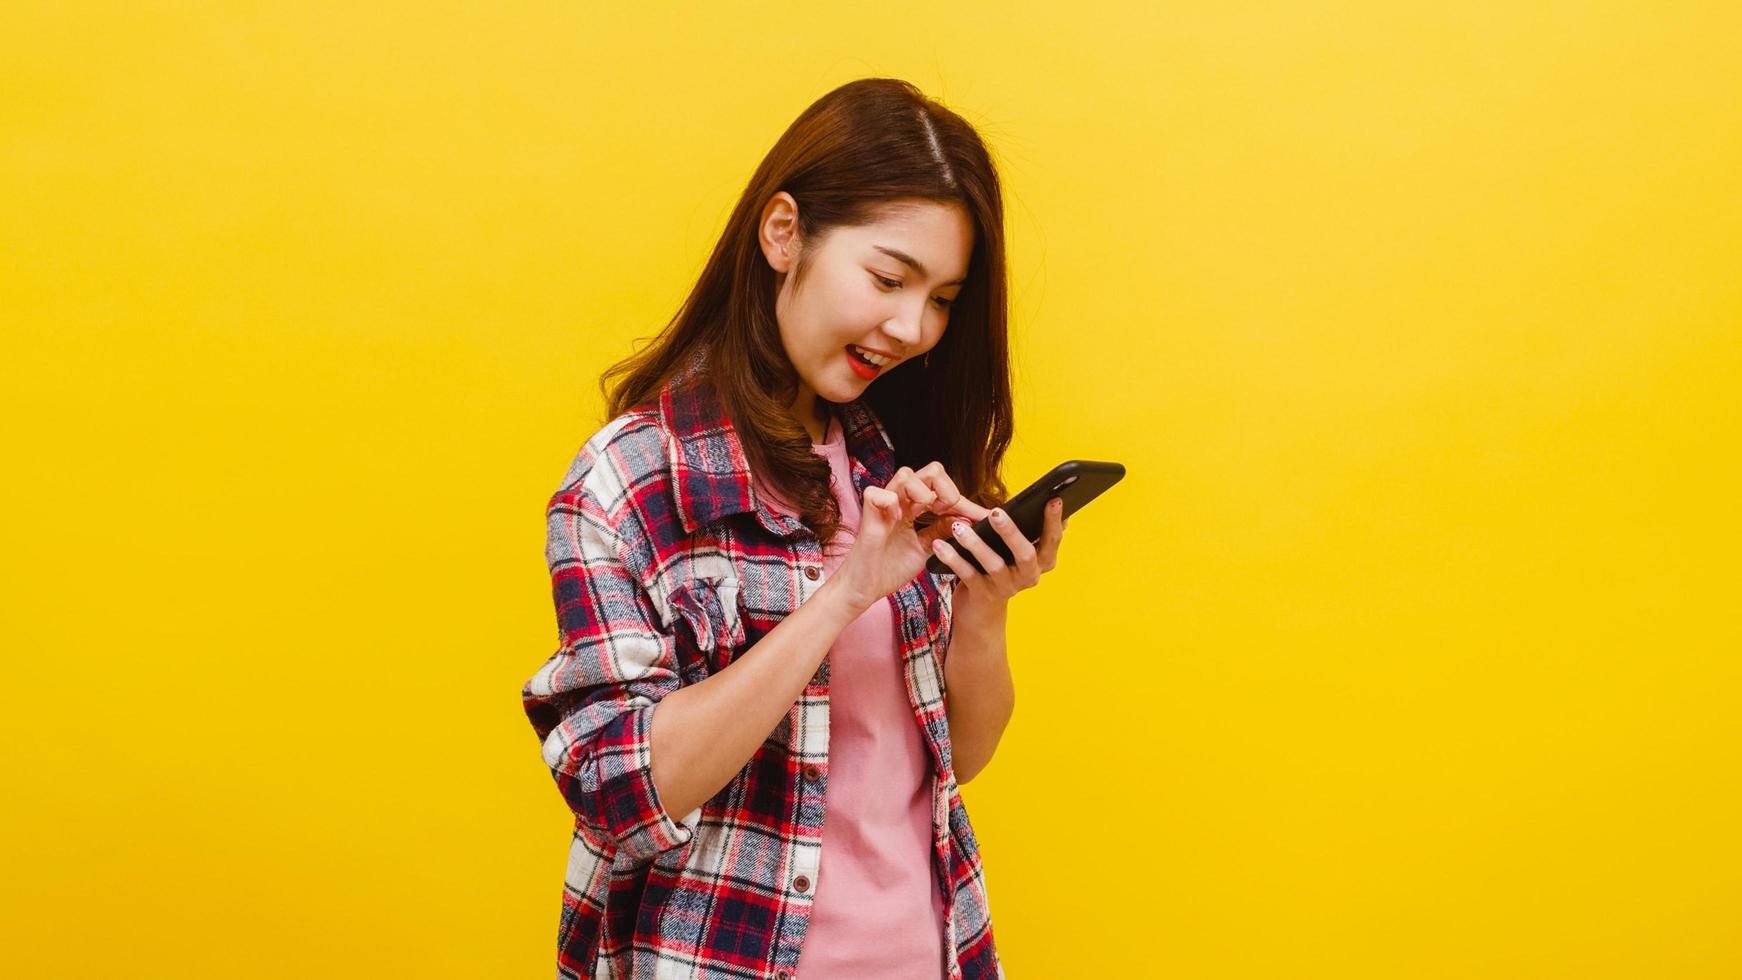 femme asiatique utilisant un téléphone avec une expression positive, sourit largement. photo